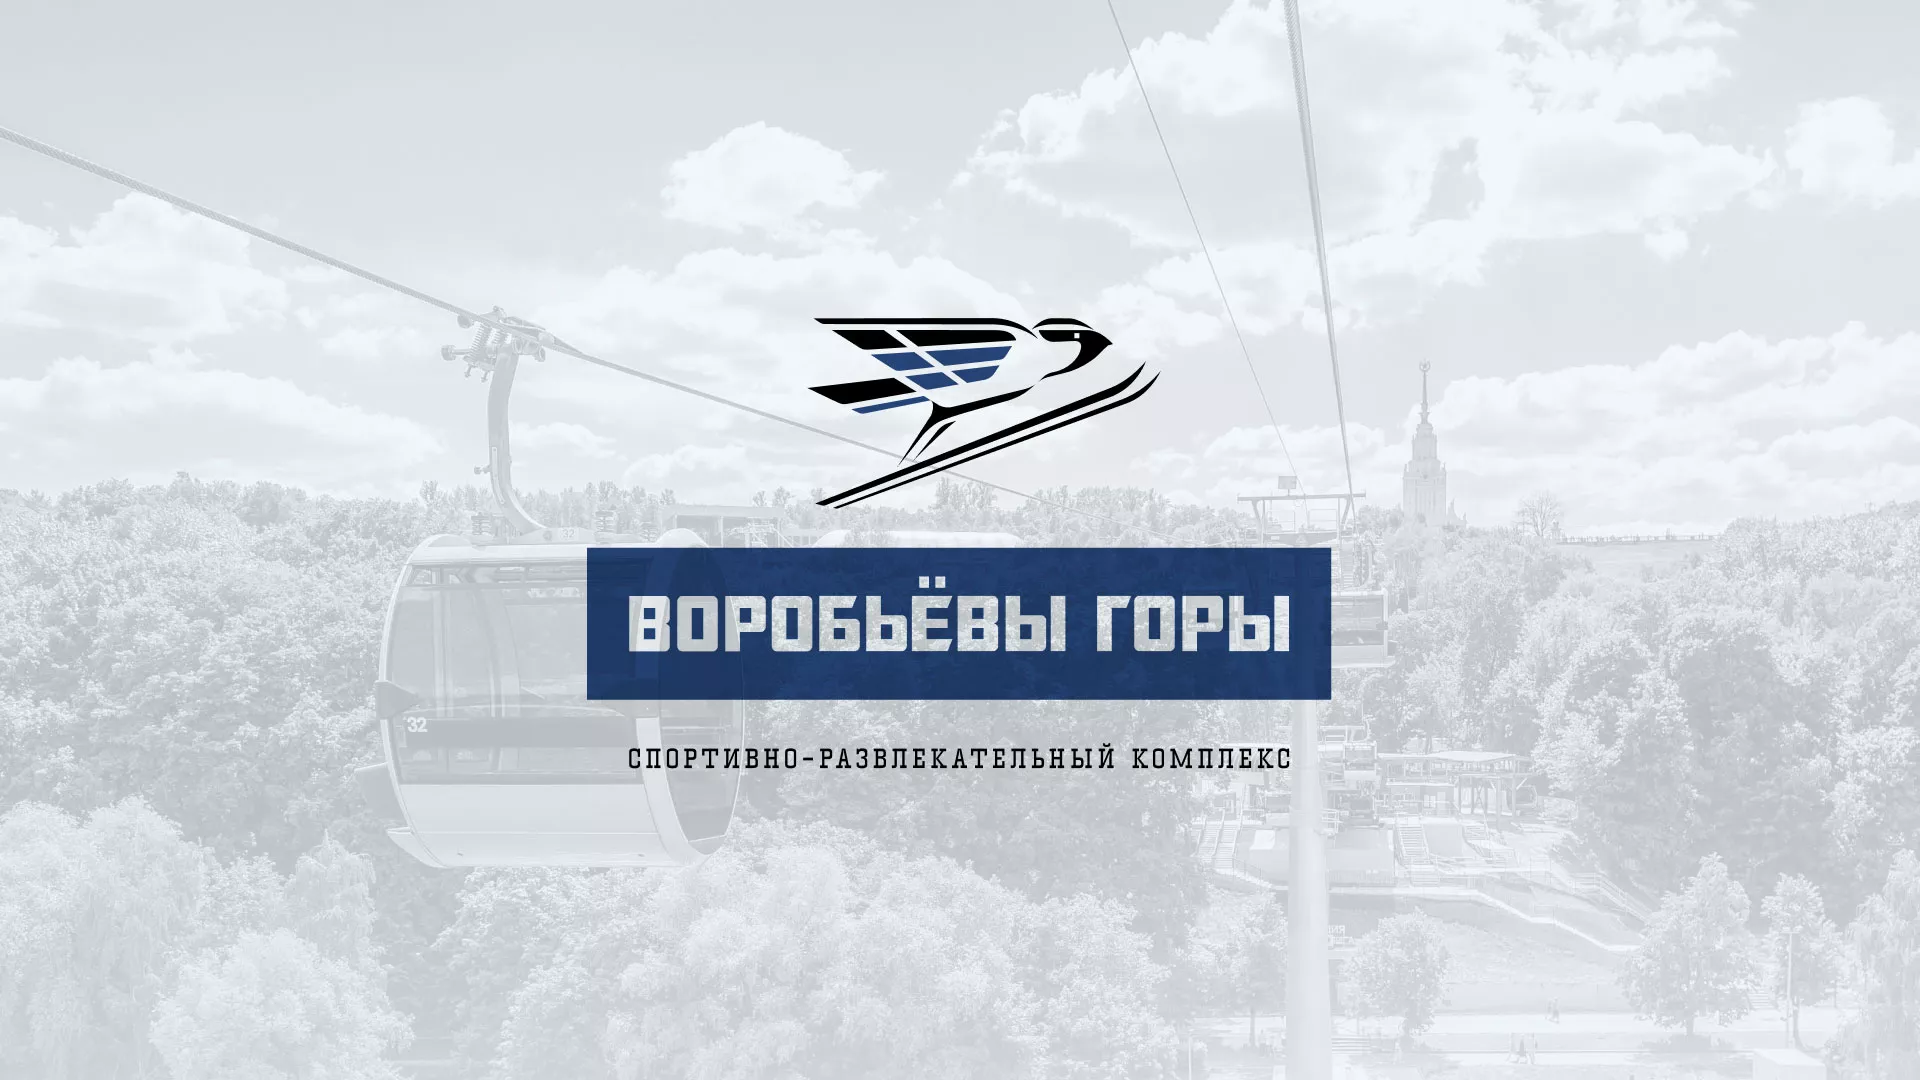 Разработка сайта в Шелехове для спортивно-развлекательного комплекса «Воробьёвы горы»